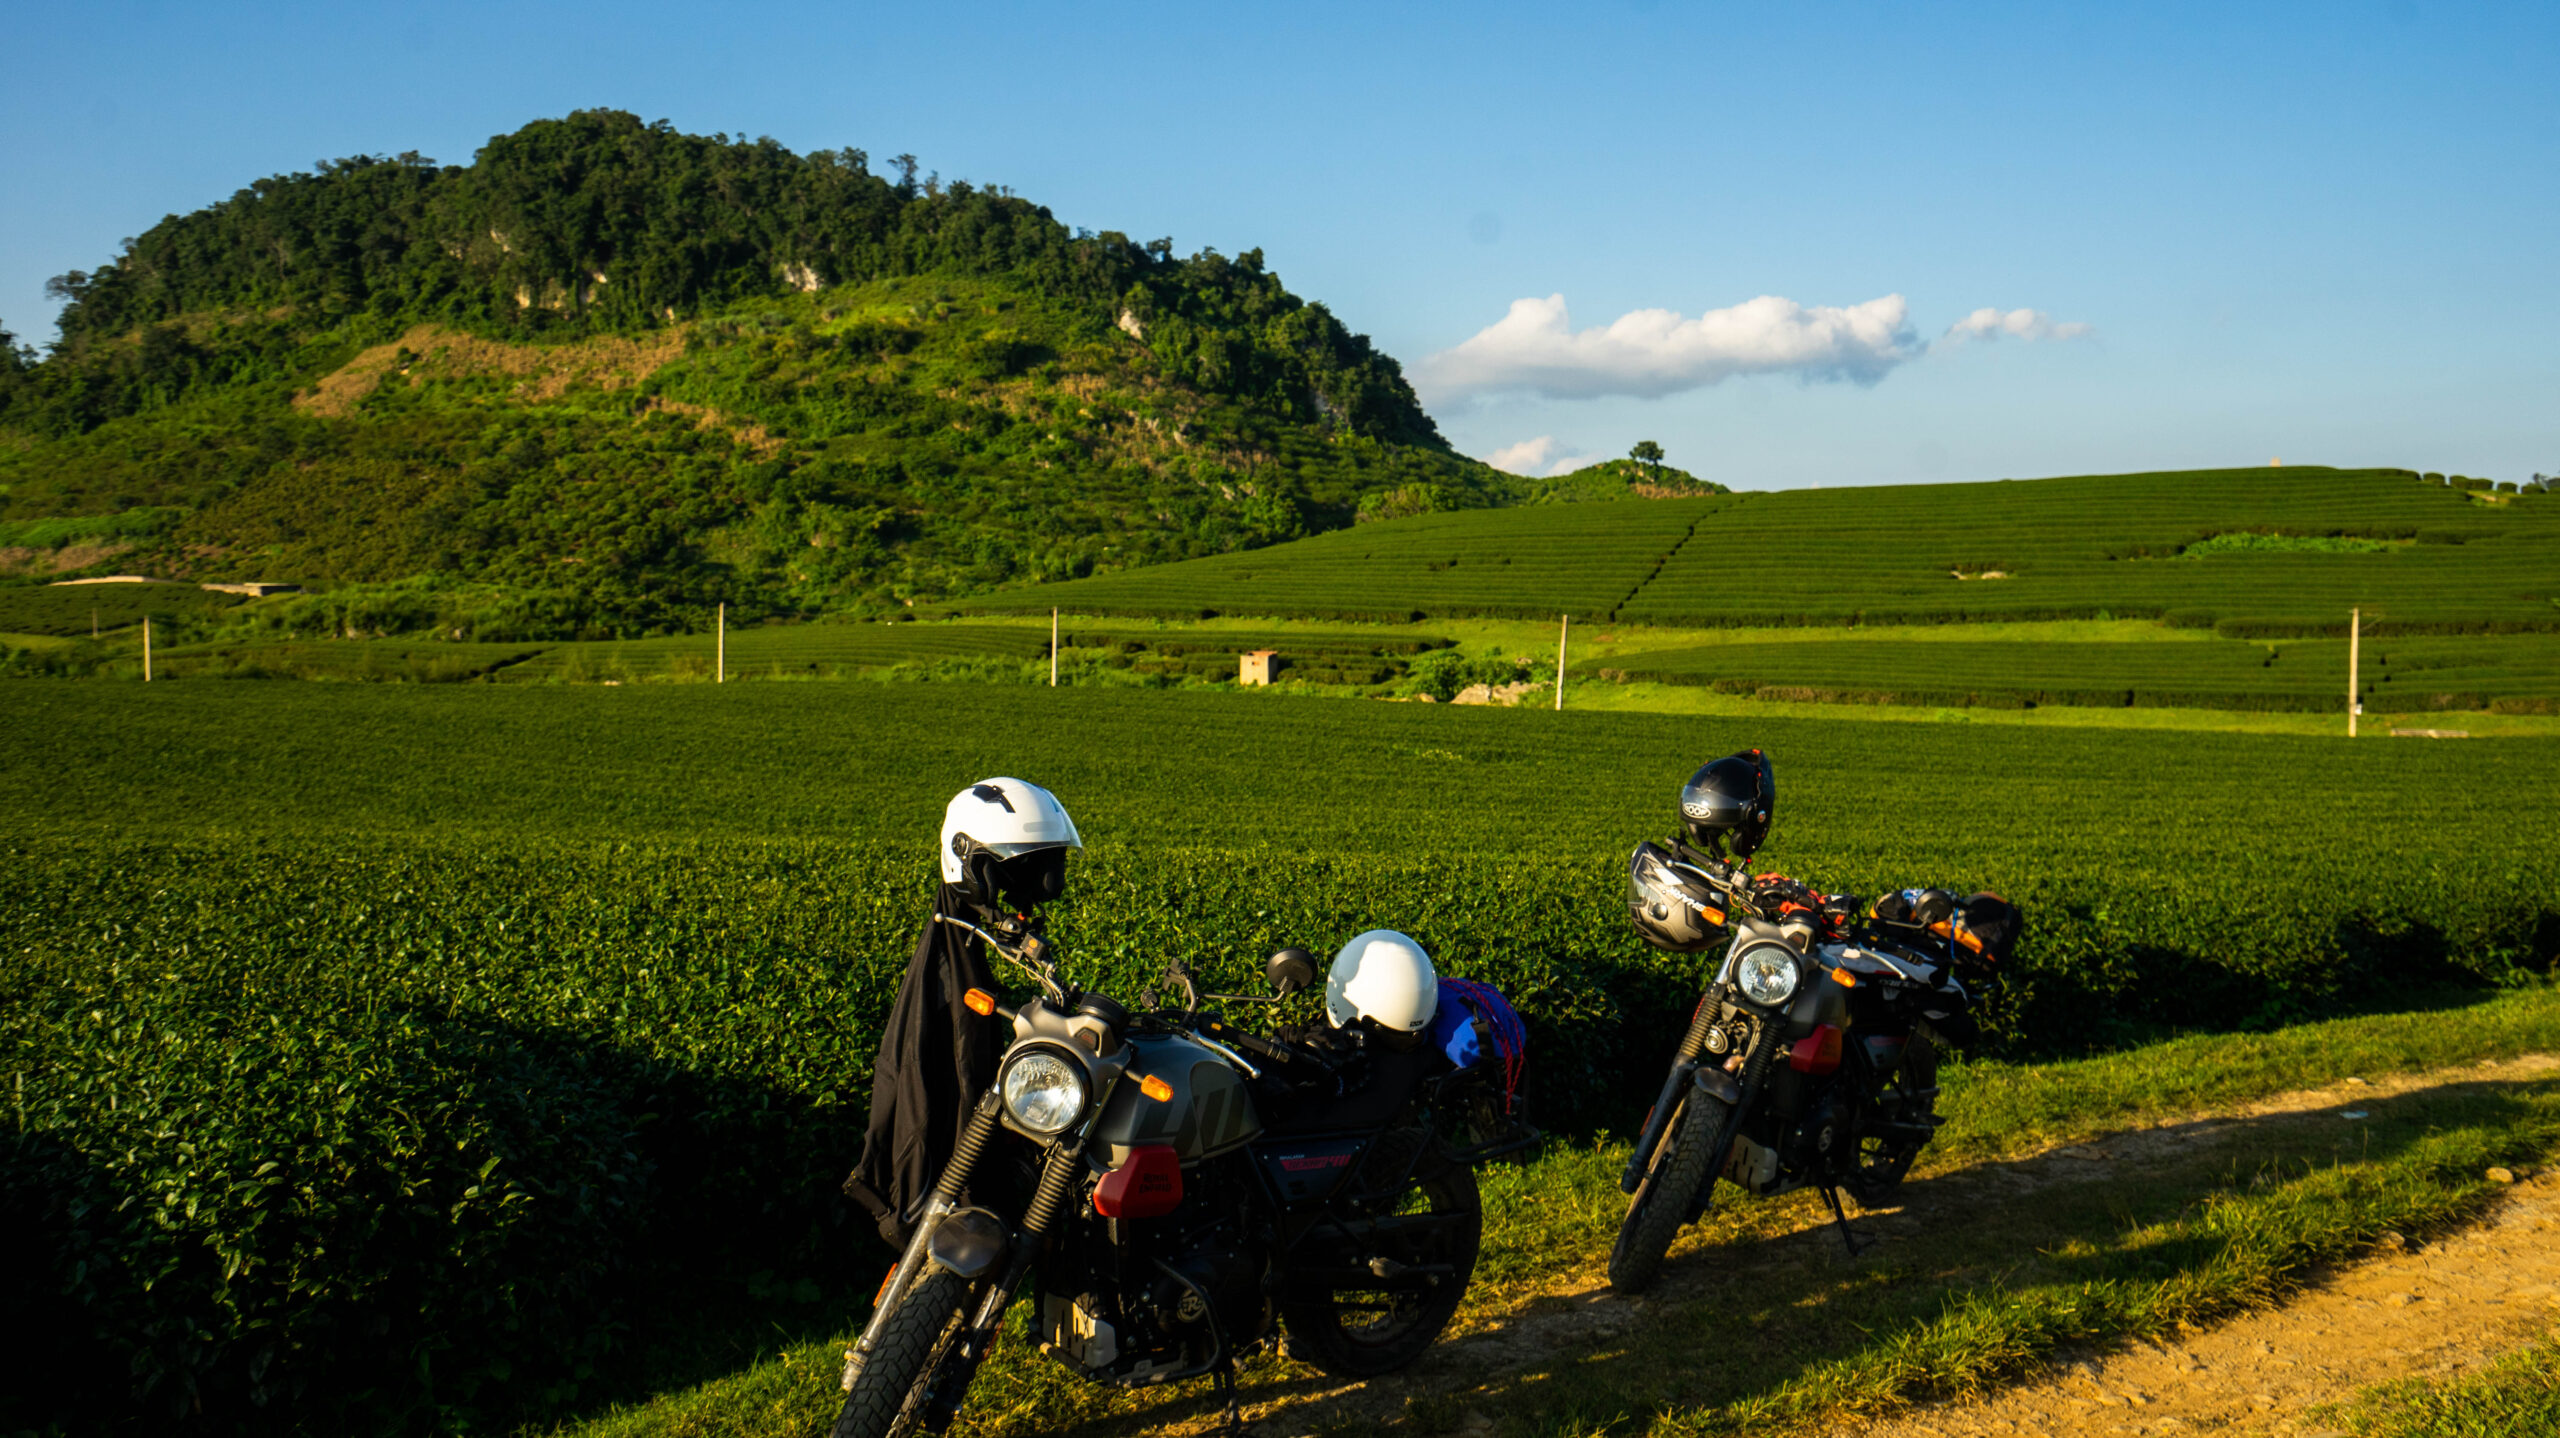 Nos motos posant dans les sublimes paysages du Nord-ouest du Vietnam (Moc Chau)